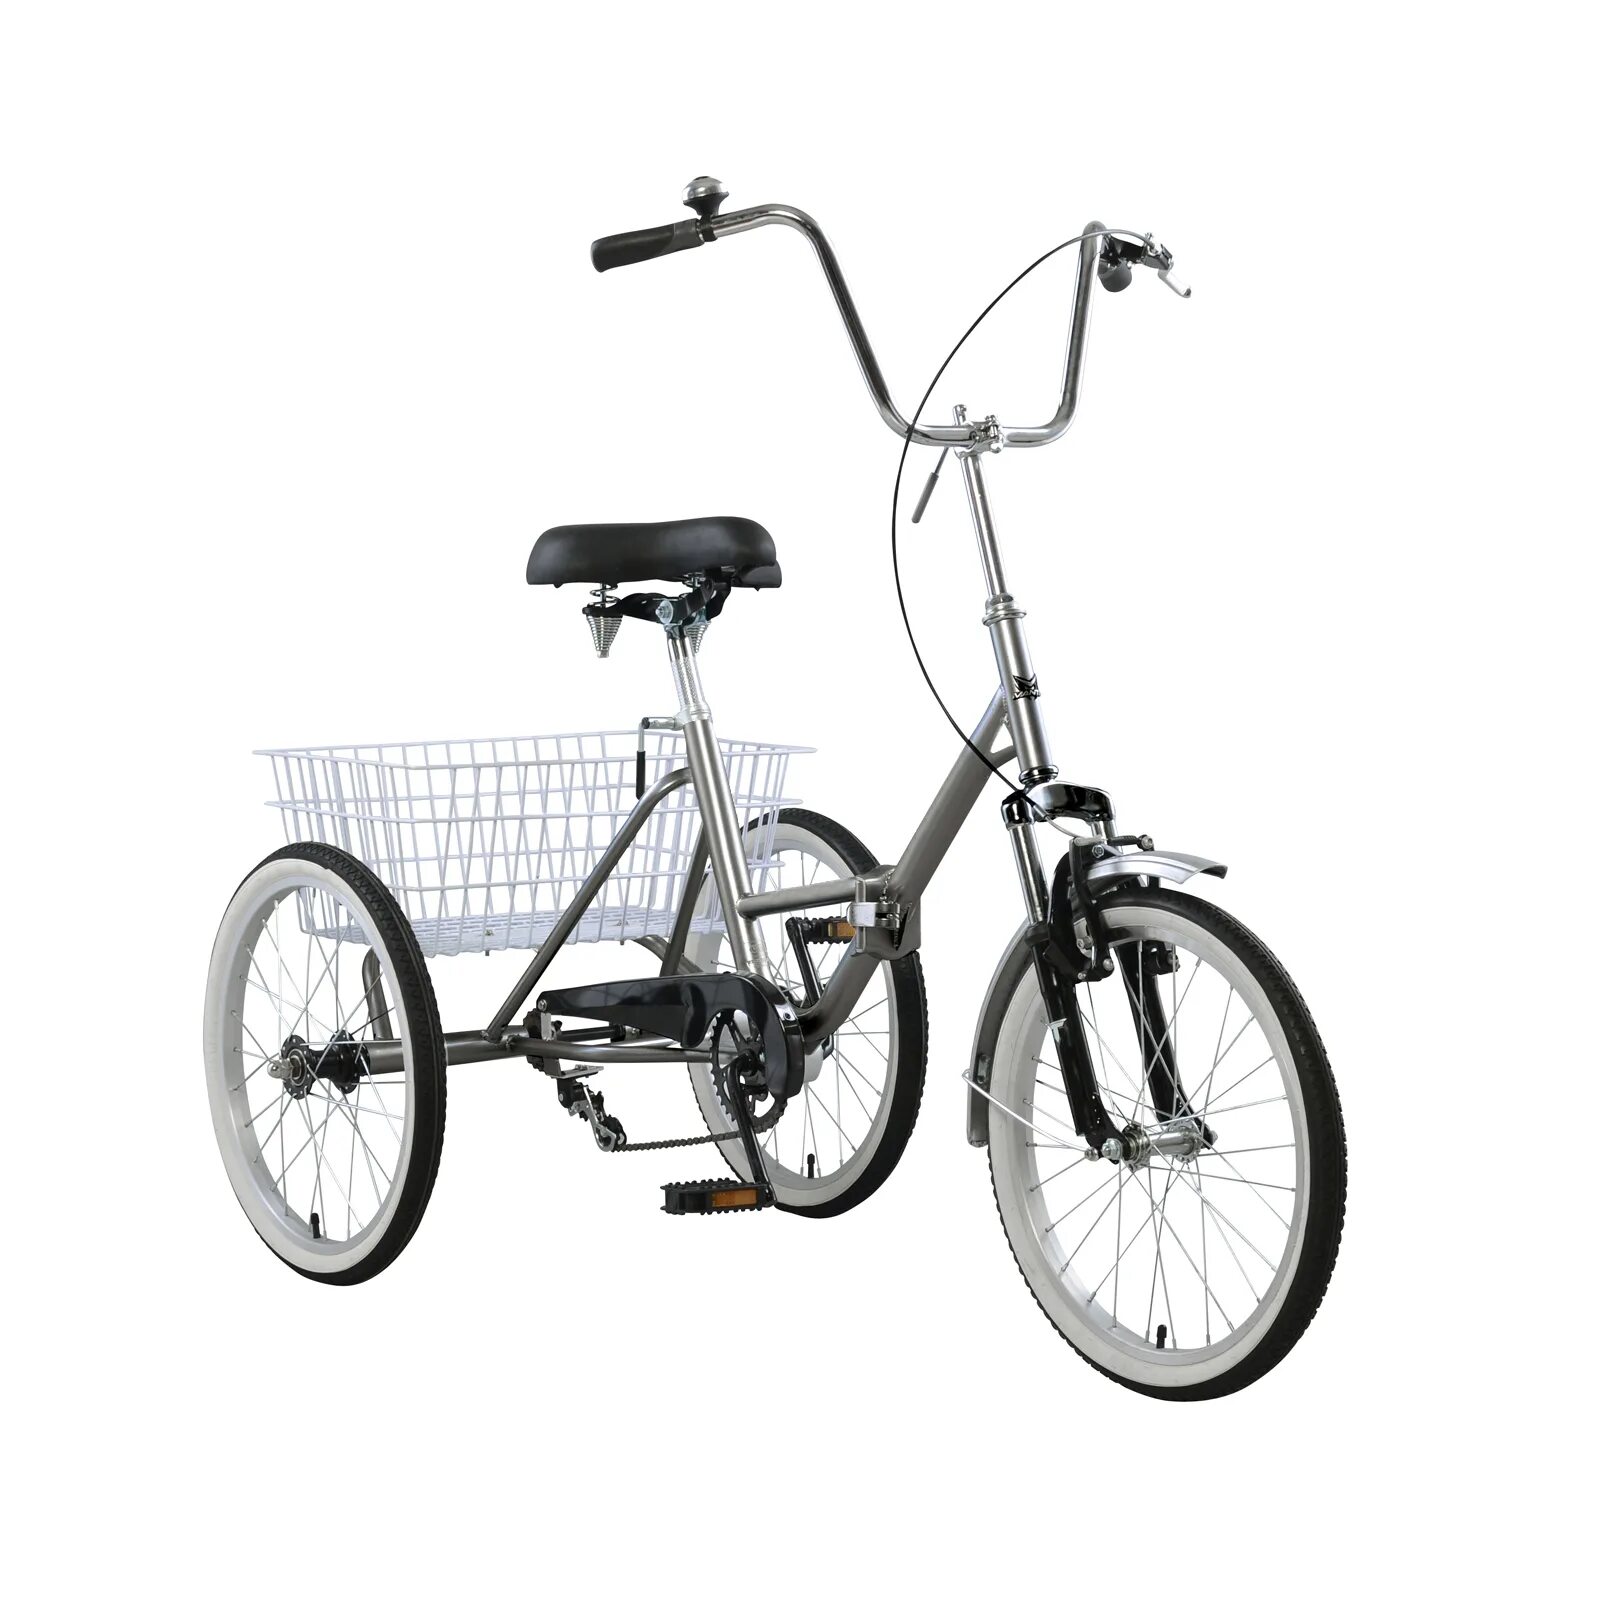 Купить 3 колесный велосипед взрослый. Mantis 3 колесный велосипед. Эл.велосипед трехколесный трицикл Дункан трайк 24. Trike Delta велосипед трехколесный. 3х колёсный велосипед взрослый Дункан.